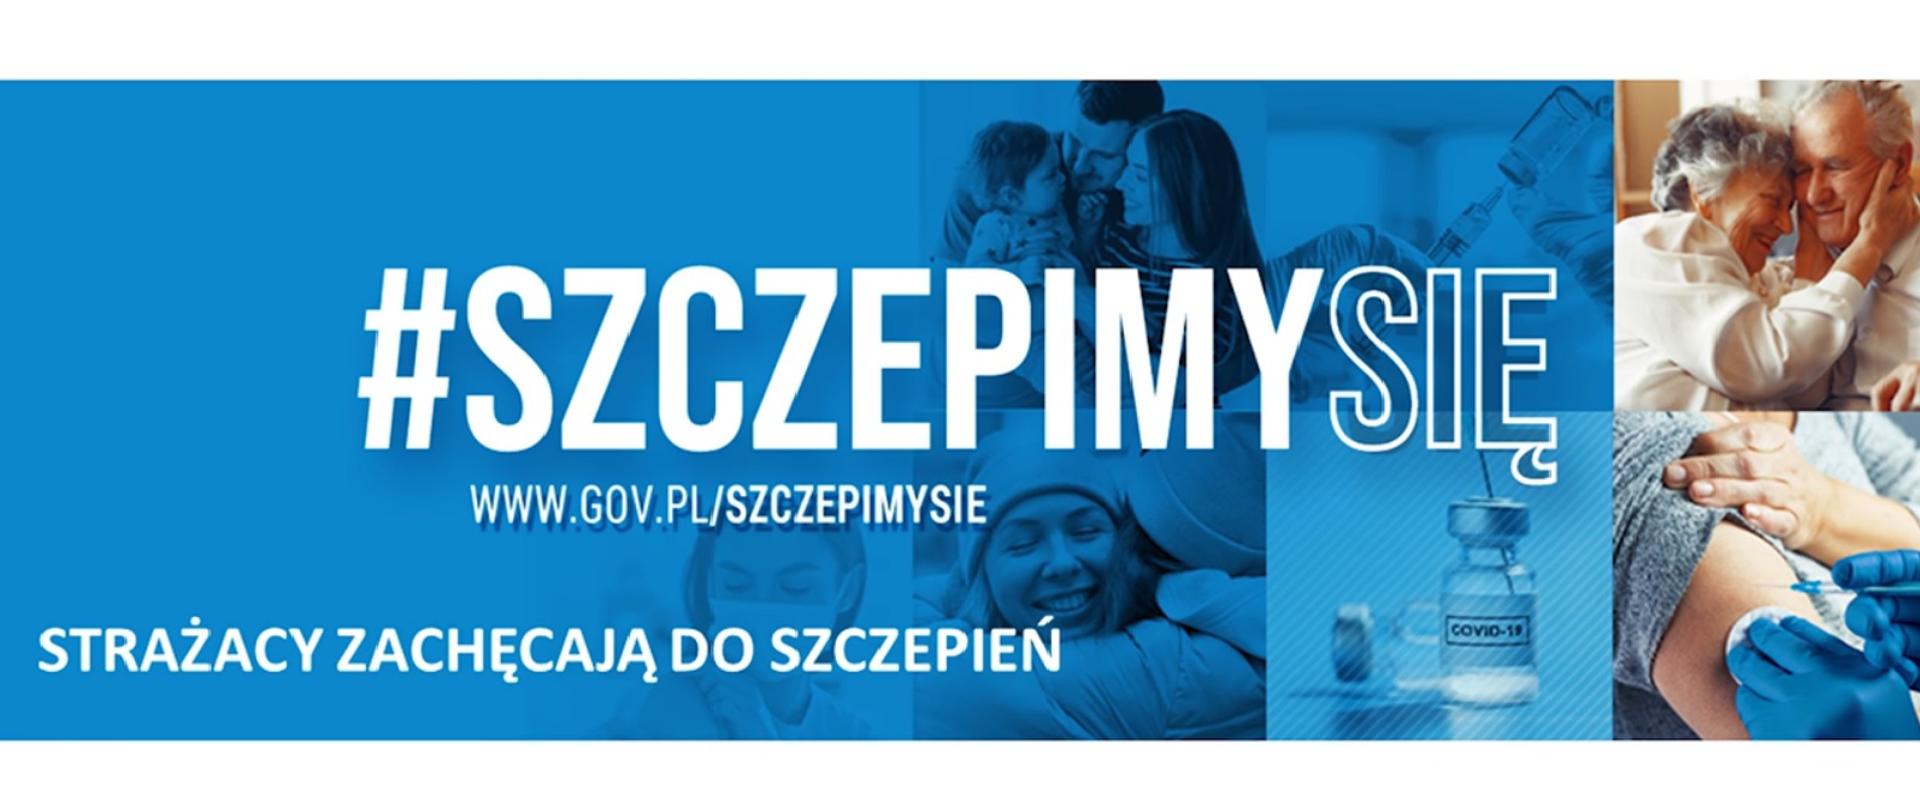 Niebieskie tło. Na nim napis: "#SZCZEPIMY SIĘ. Strażacy zachęcają do szczepień." Po prawej zdjęcia ampułek, strzykawek. Prawy, górny róg logo Ministerstwa Zdrowia i NFZ.